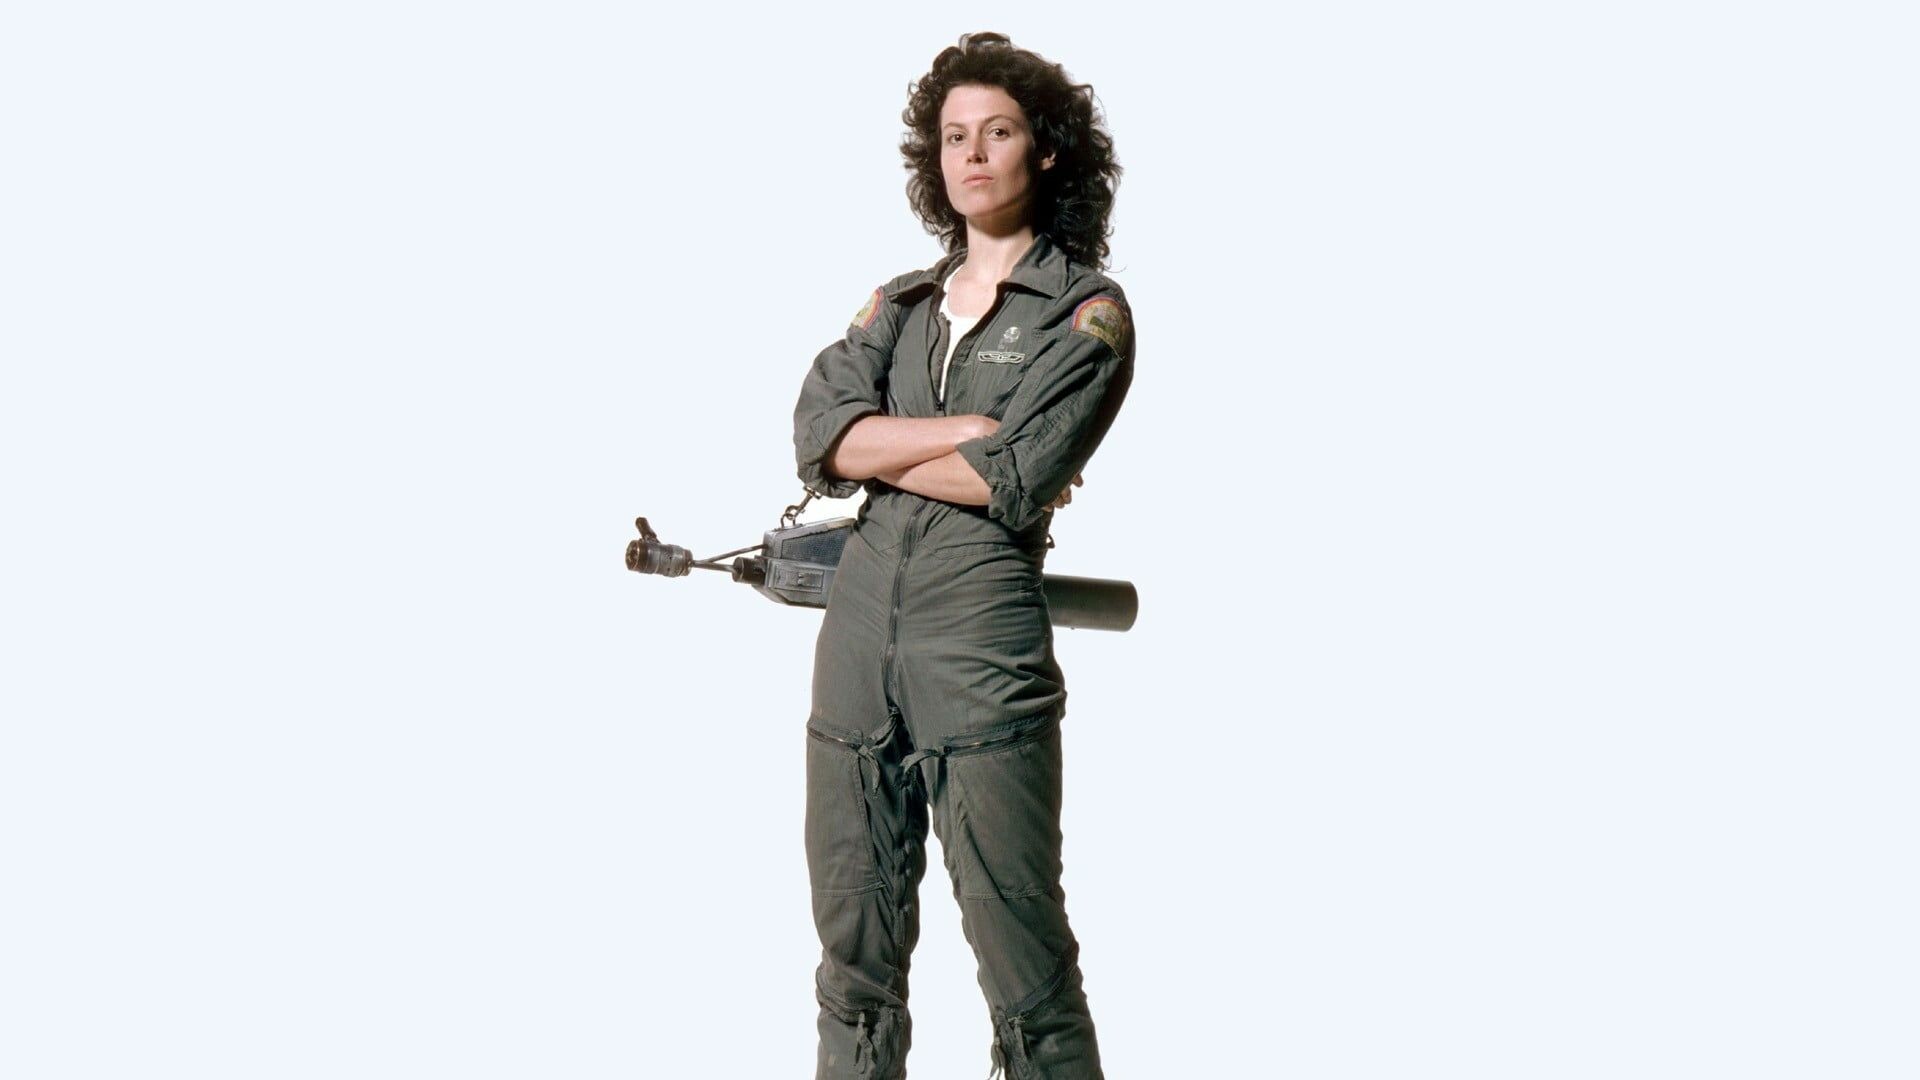 Alien (Movie): Sigourney Weaver as Ellen Ripley, the warrant officer aboard the Nostromo. 1920x1080 Full HD Wallpaper.